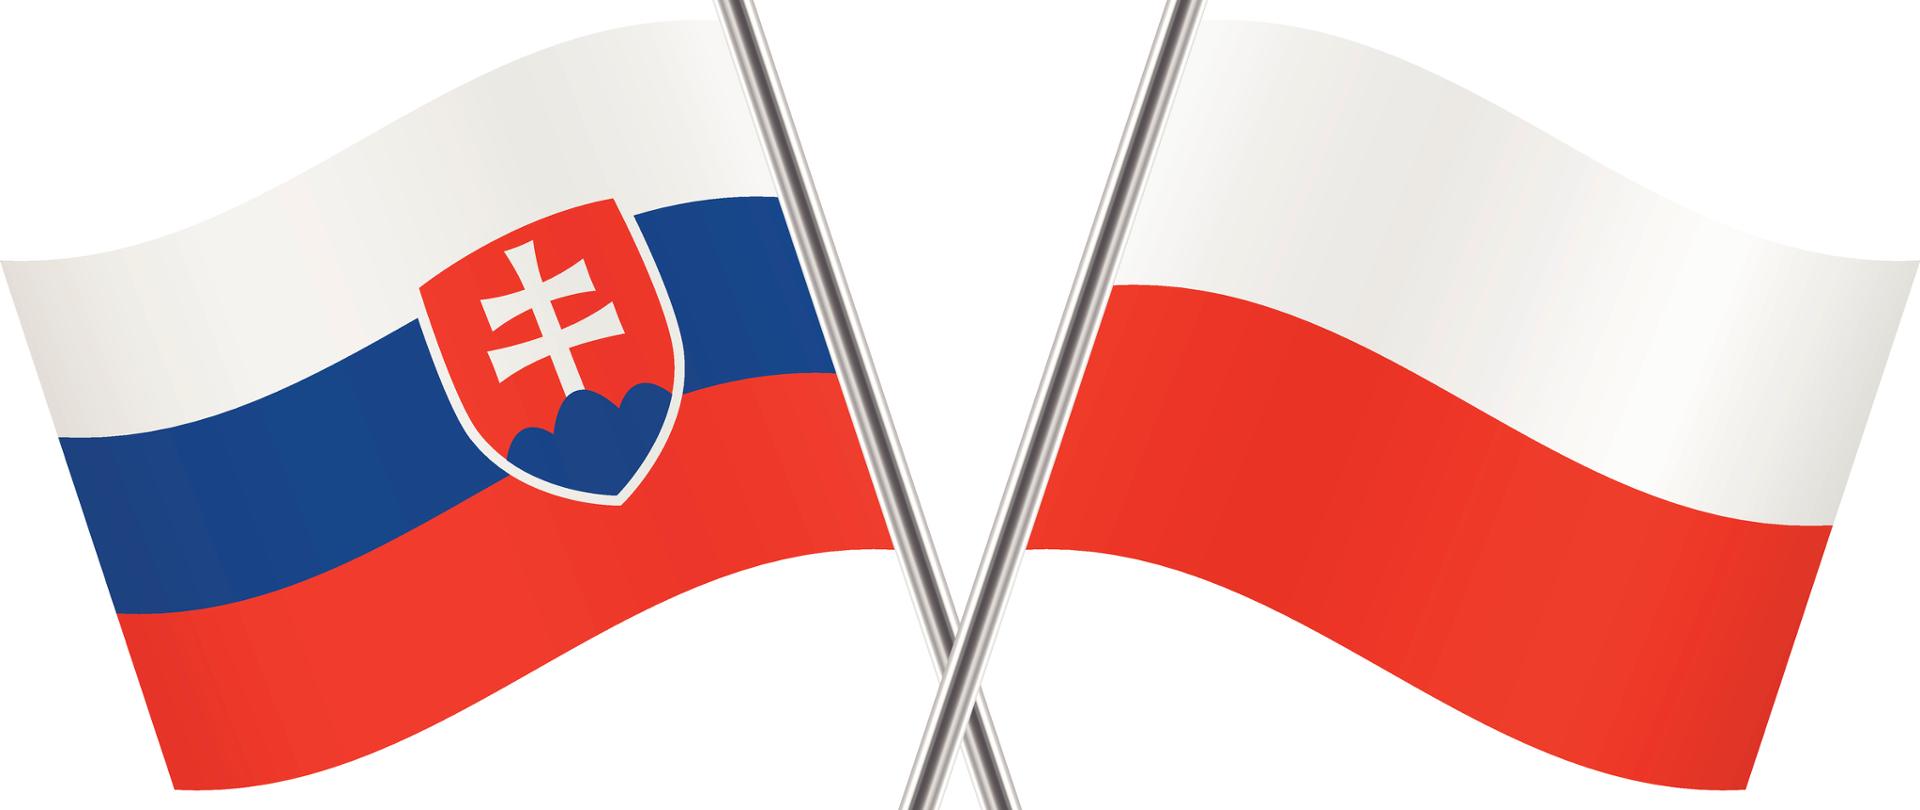 Flaga Polski i Słowacji